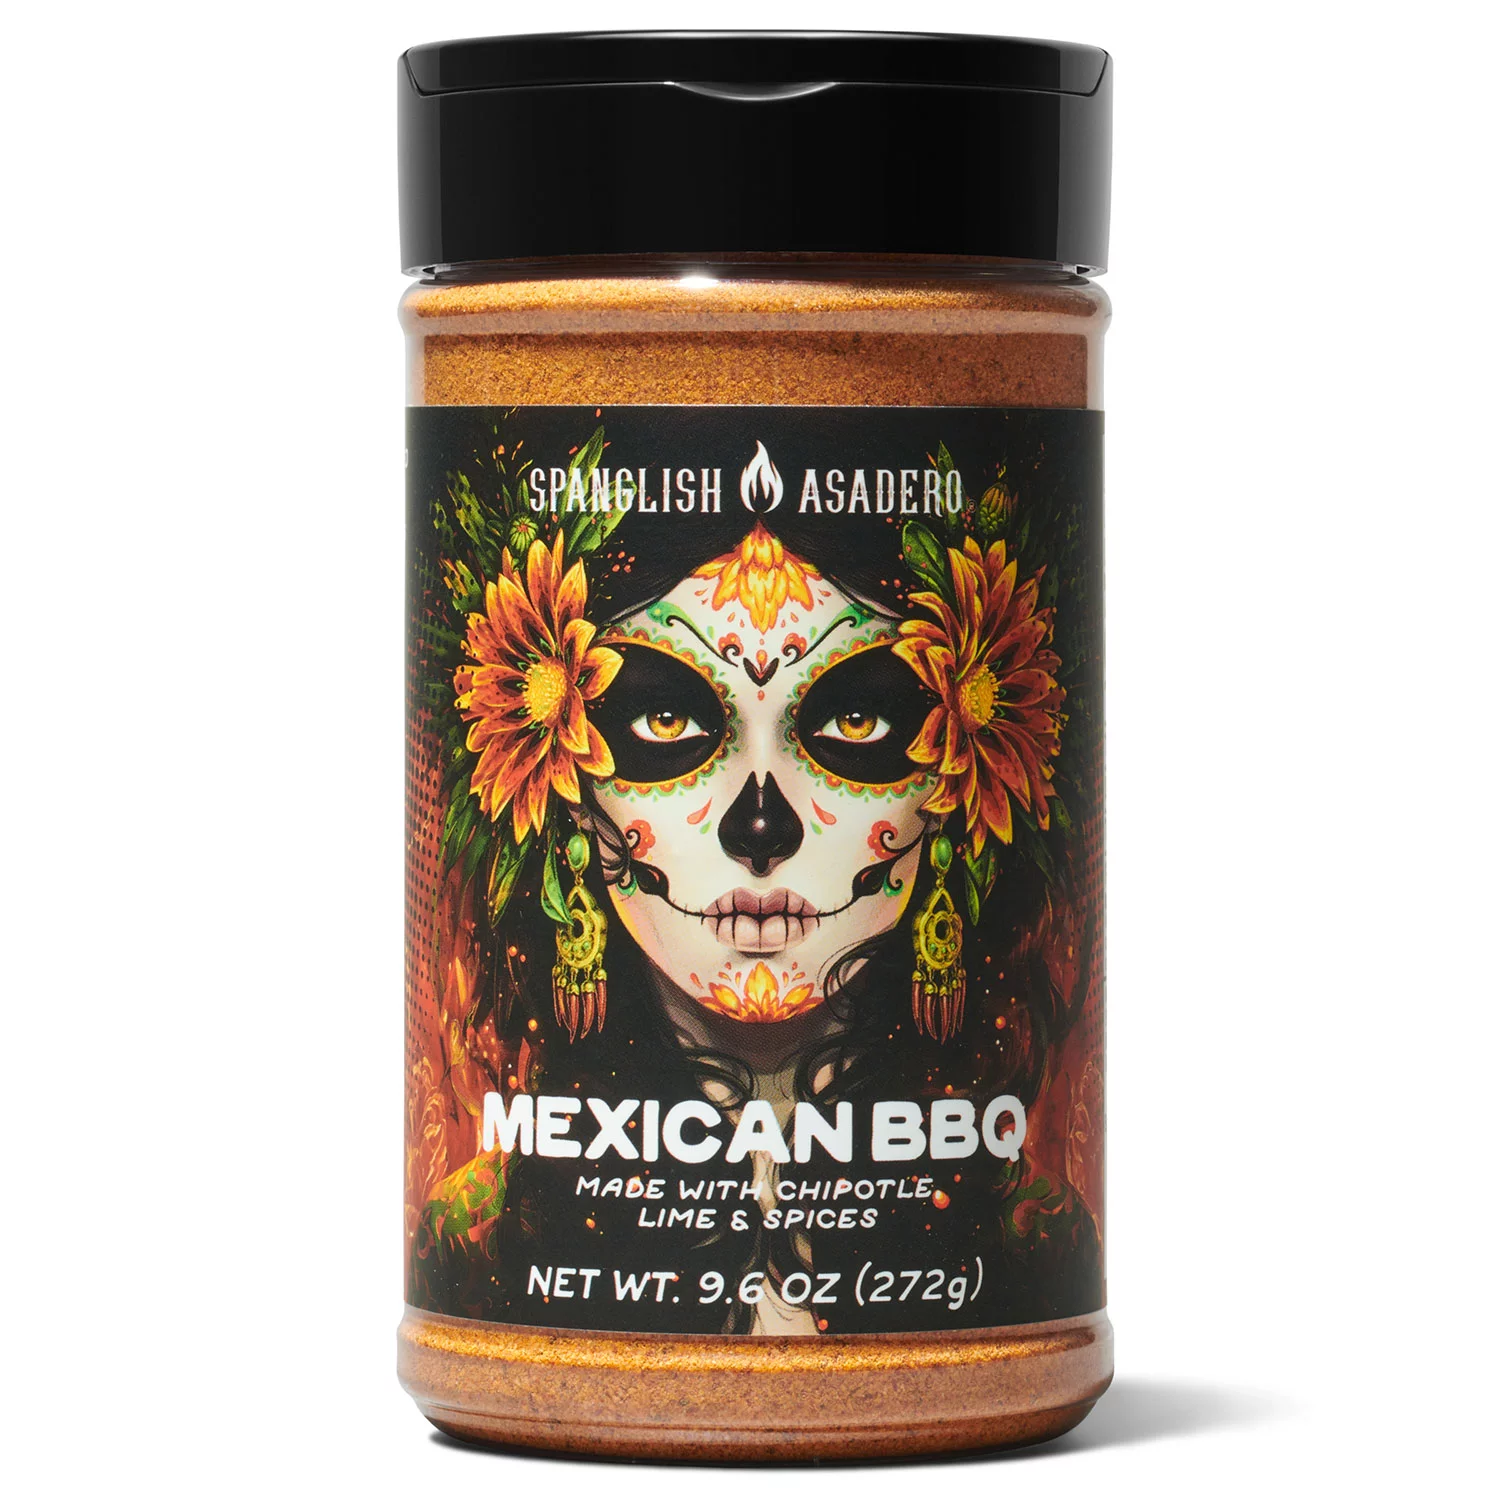 Spanglish Asadero Mexican BBQ, Seasoning